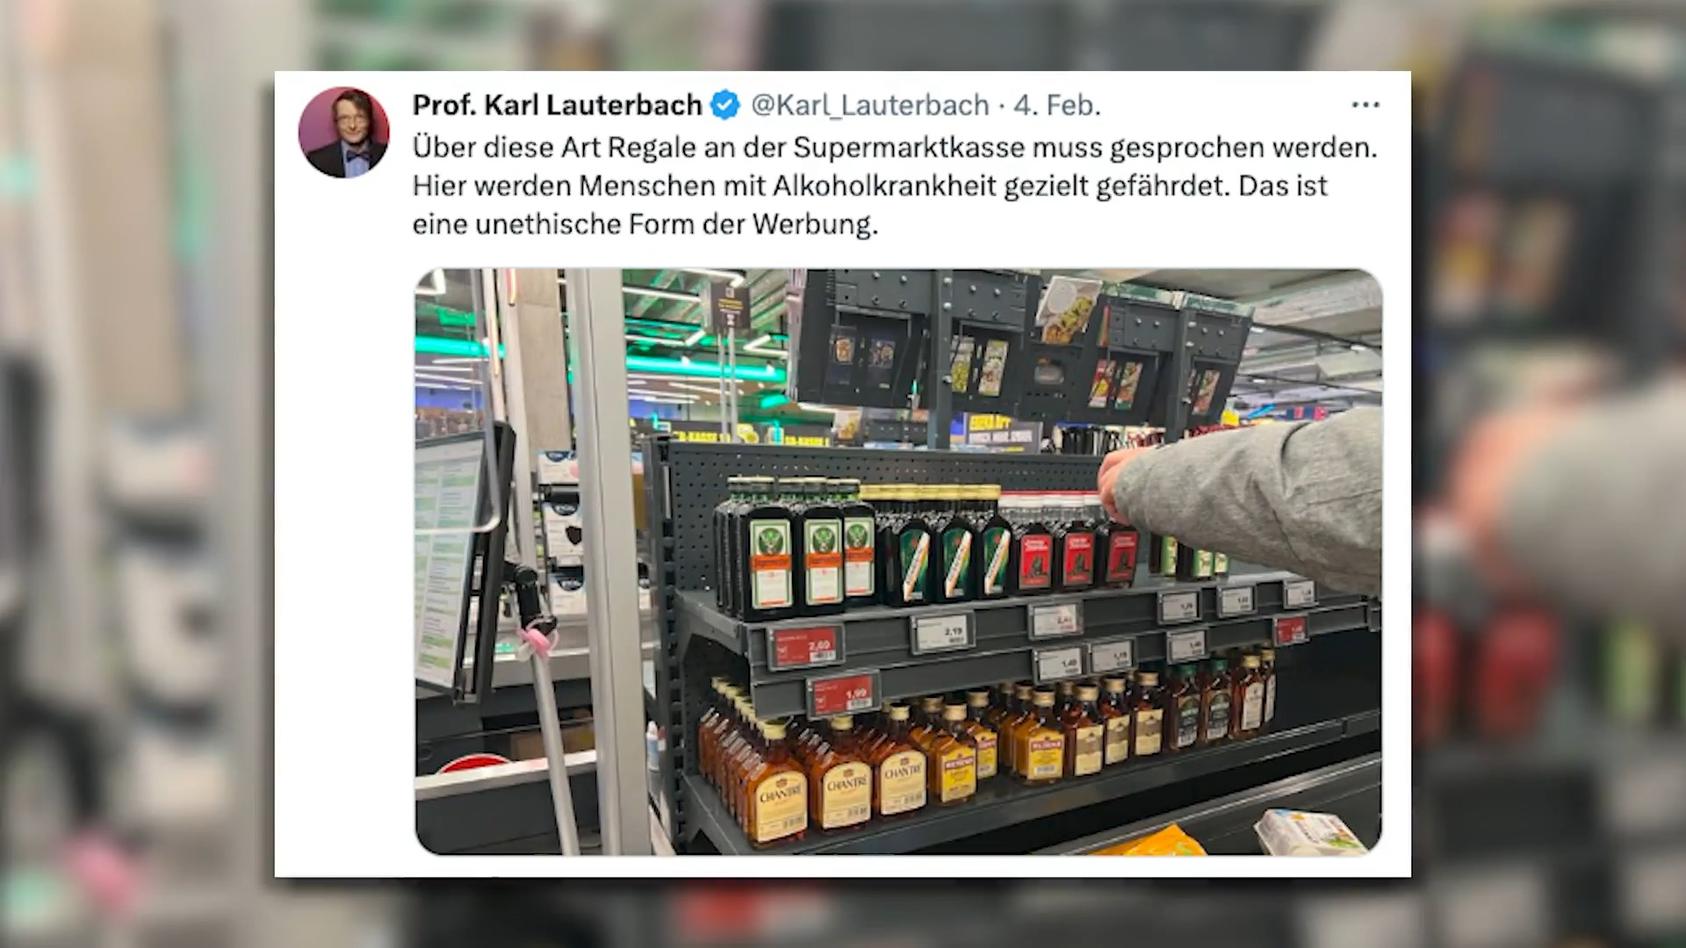 Den Flachmännern an der Kasse an den Kragen Lauterbach kritisiert Supermarkt-Auslage